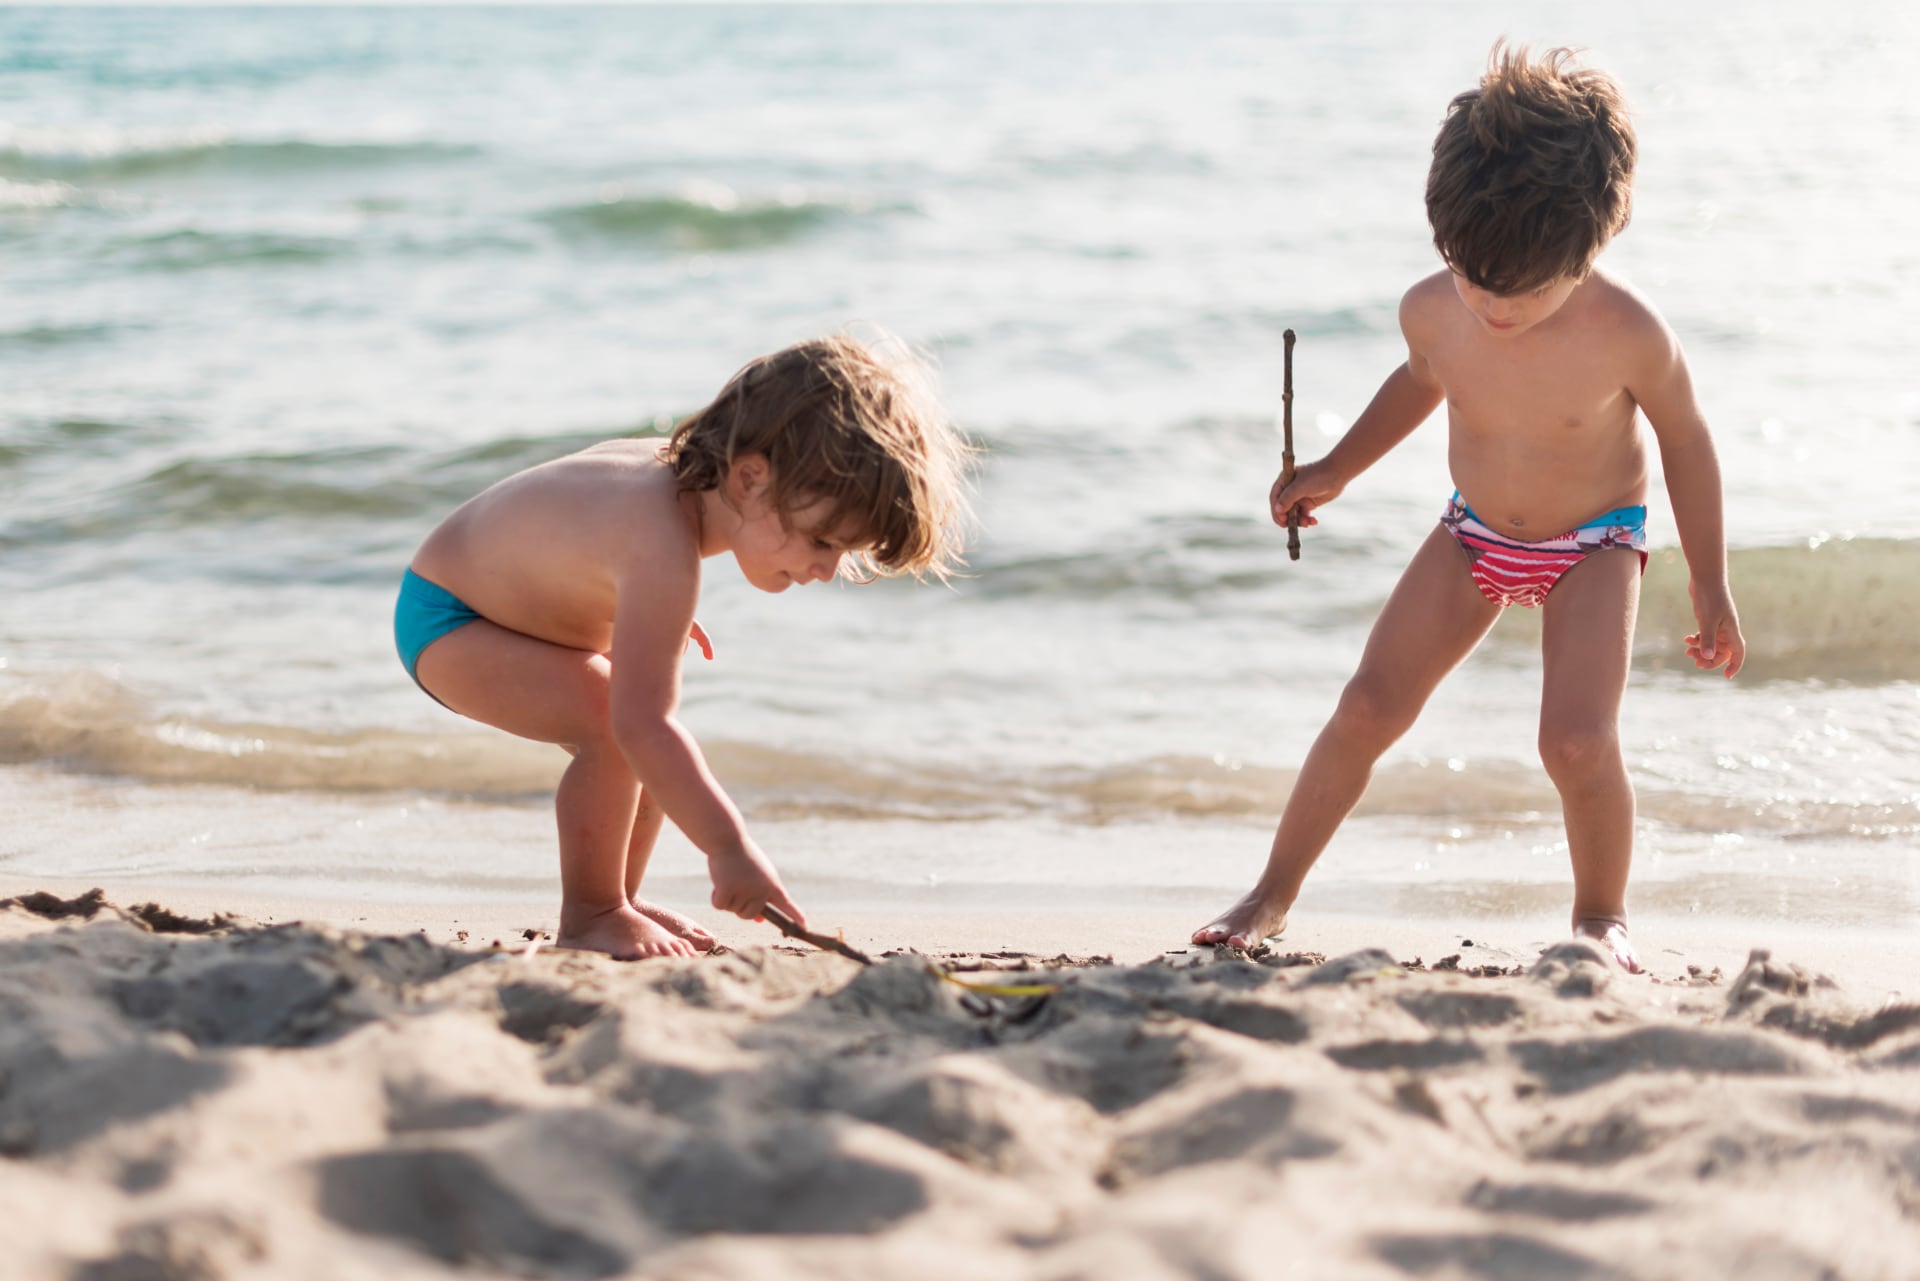 Bambini sulla spiaggia - alberghi.it